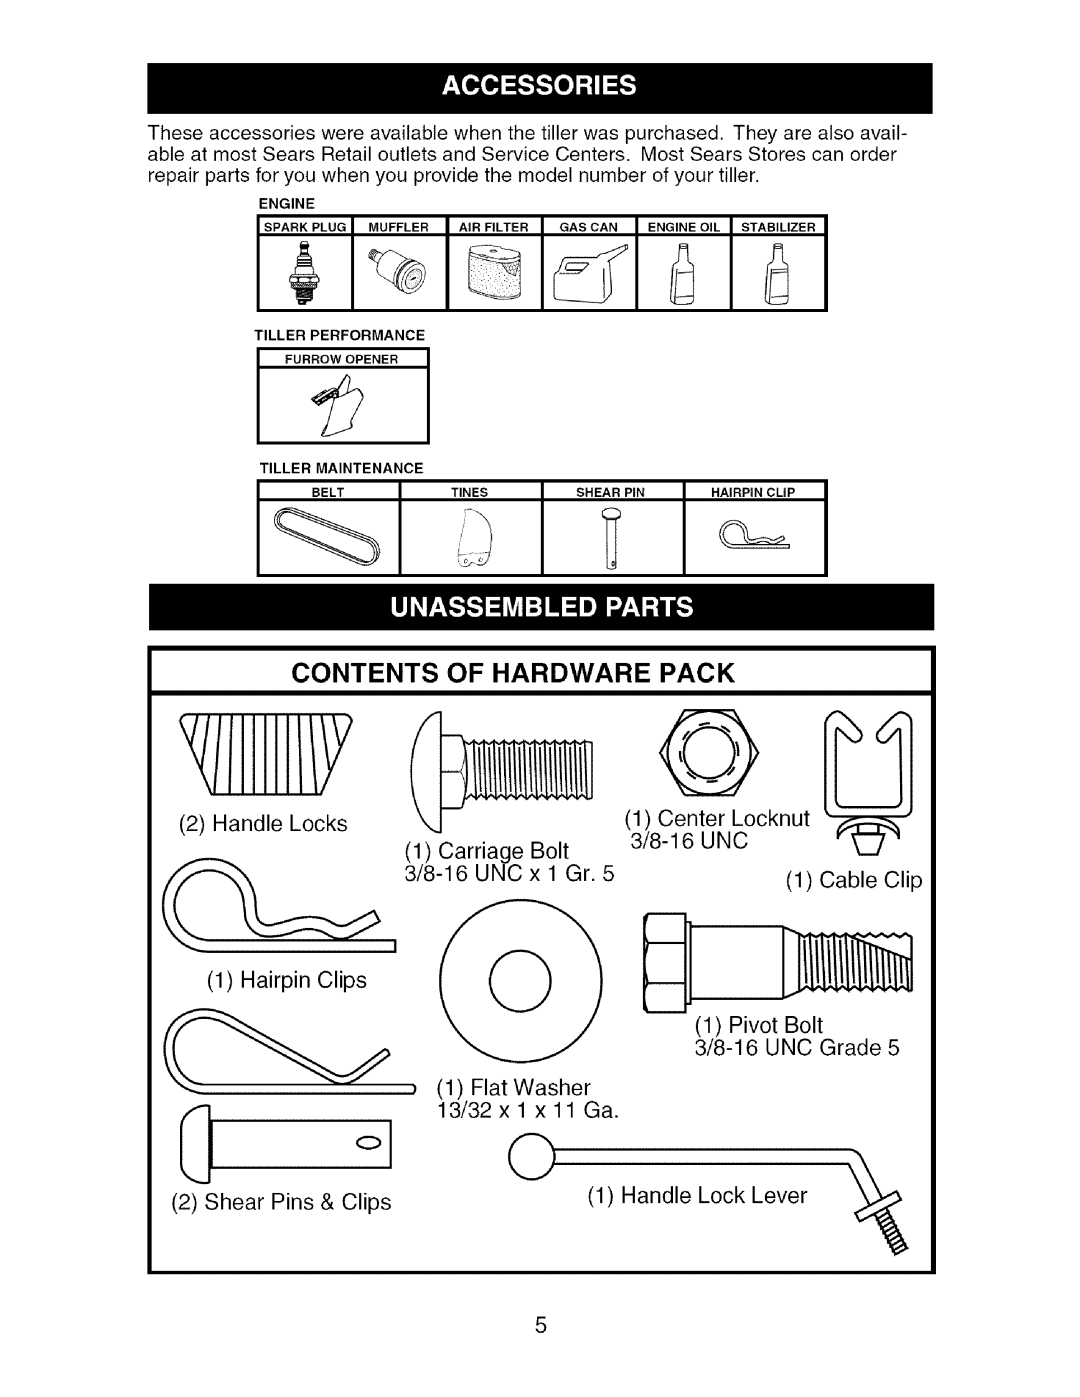 Craftsman 917.29604 owner manual Contents Of Hardware Pack, Iiiiiii/Y @ 